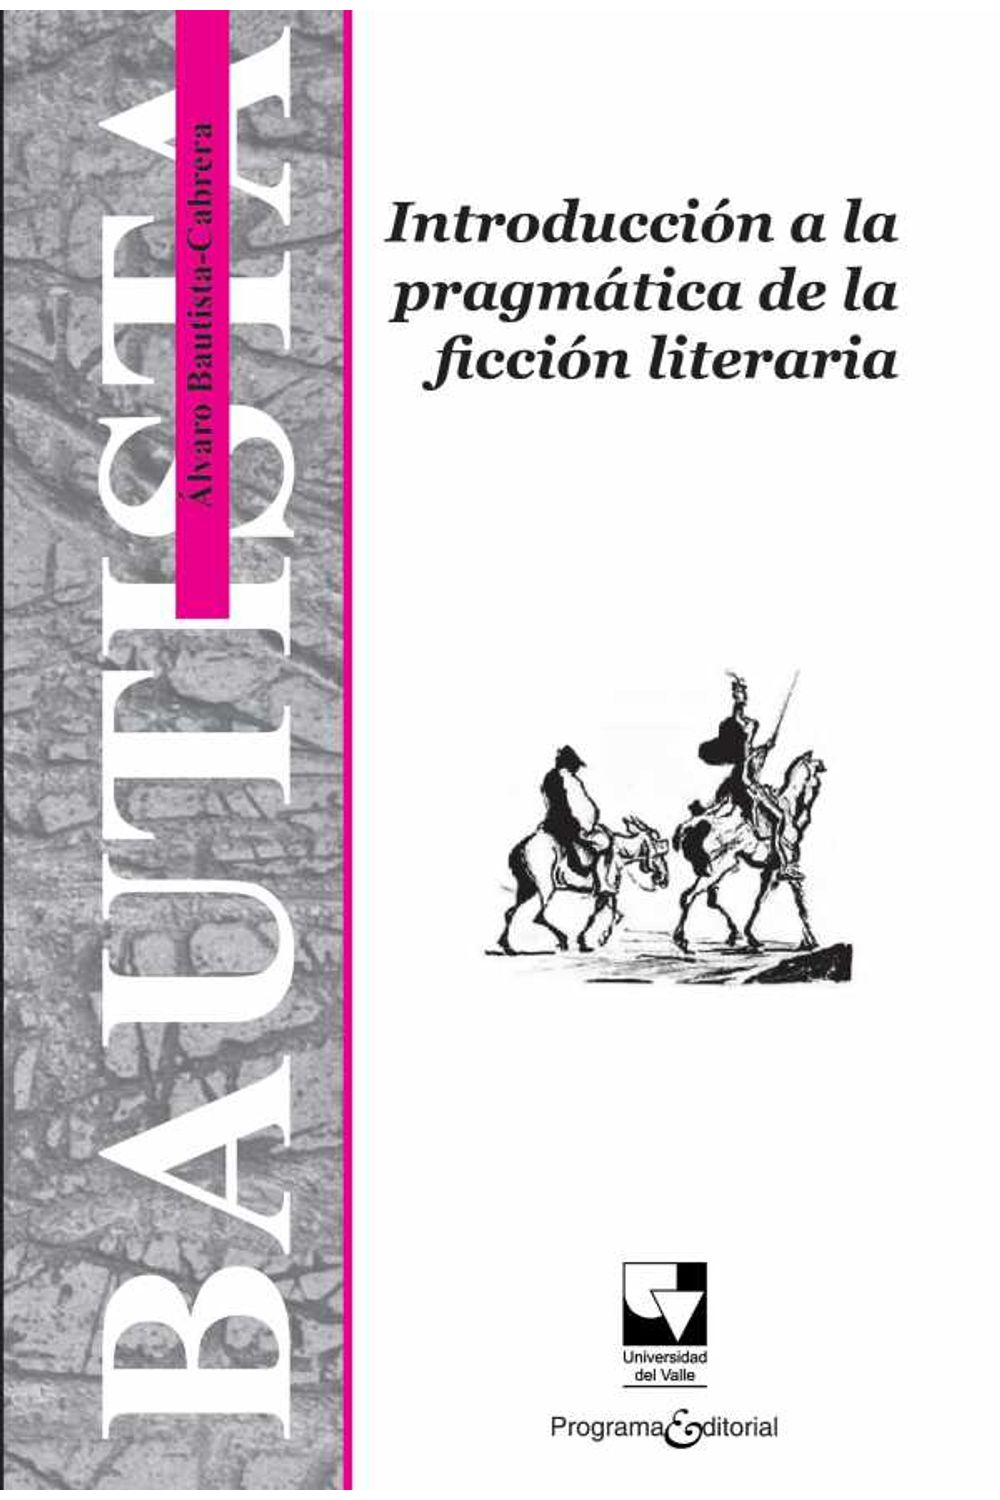 bw-introduccioacuten-a-la-pragmaacutetica-de-la-ficcioacuten-literaria-programa-editorial-universidad-del-valle-9789587655766